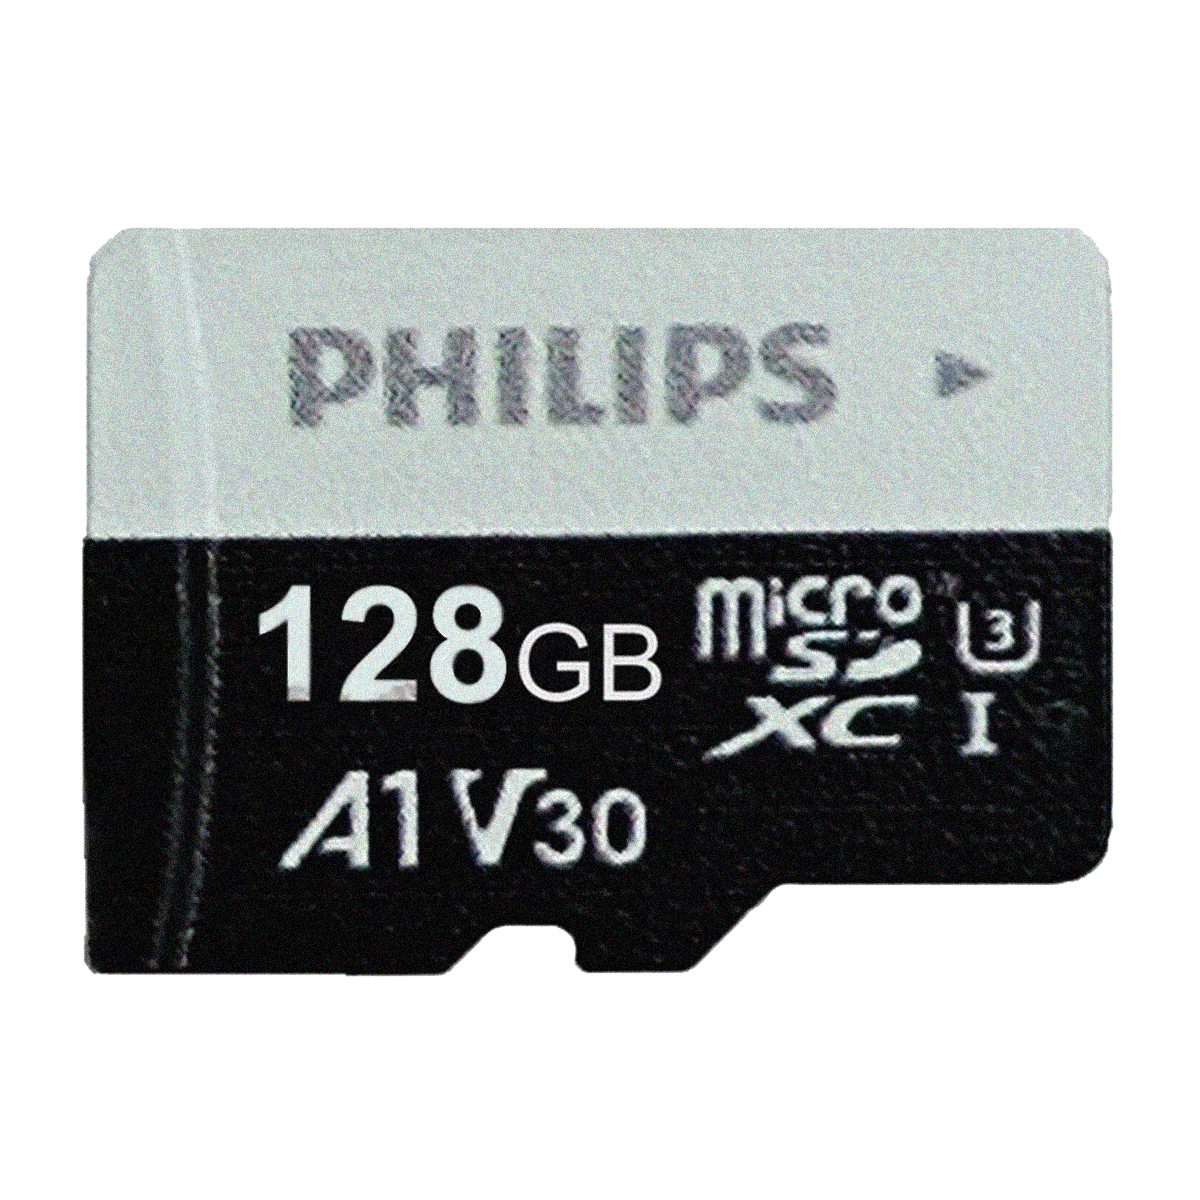 کارت حافظه microSDXC فیلیپس مدل A1-V30 کلاس 10 استاندارد UHS-I U3 سرعت 80MBps ظرفیت 128 گیگابایت